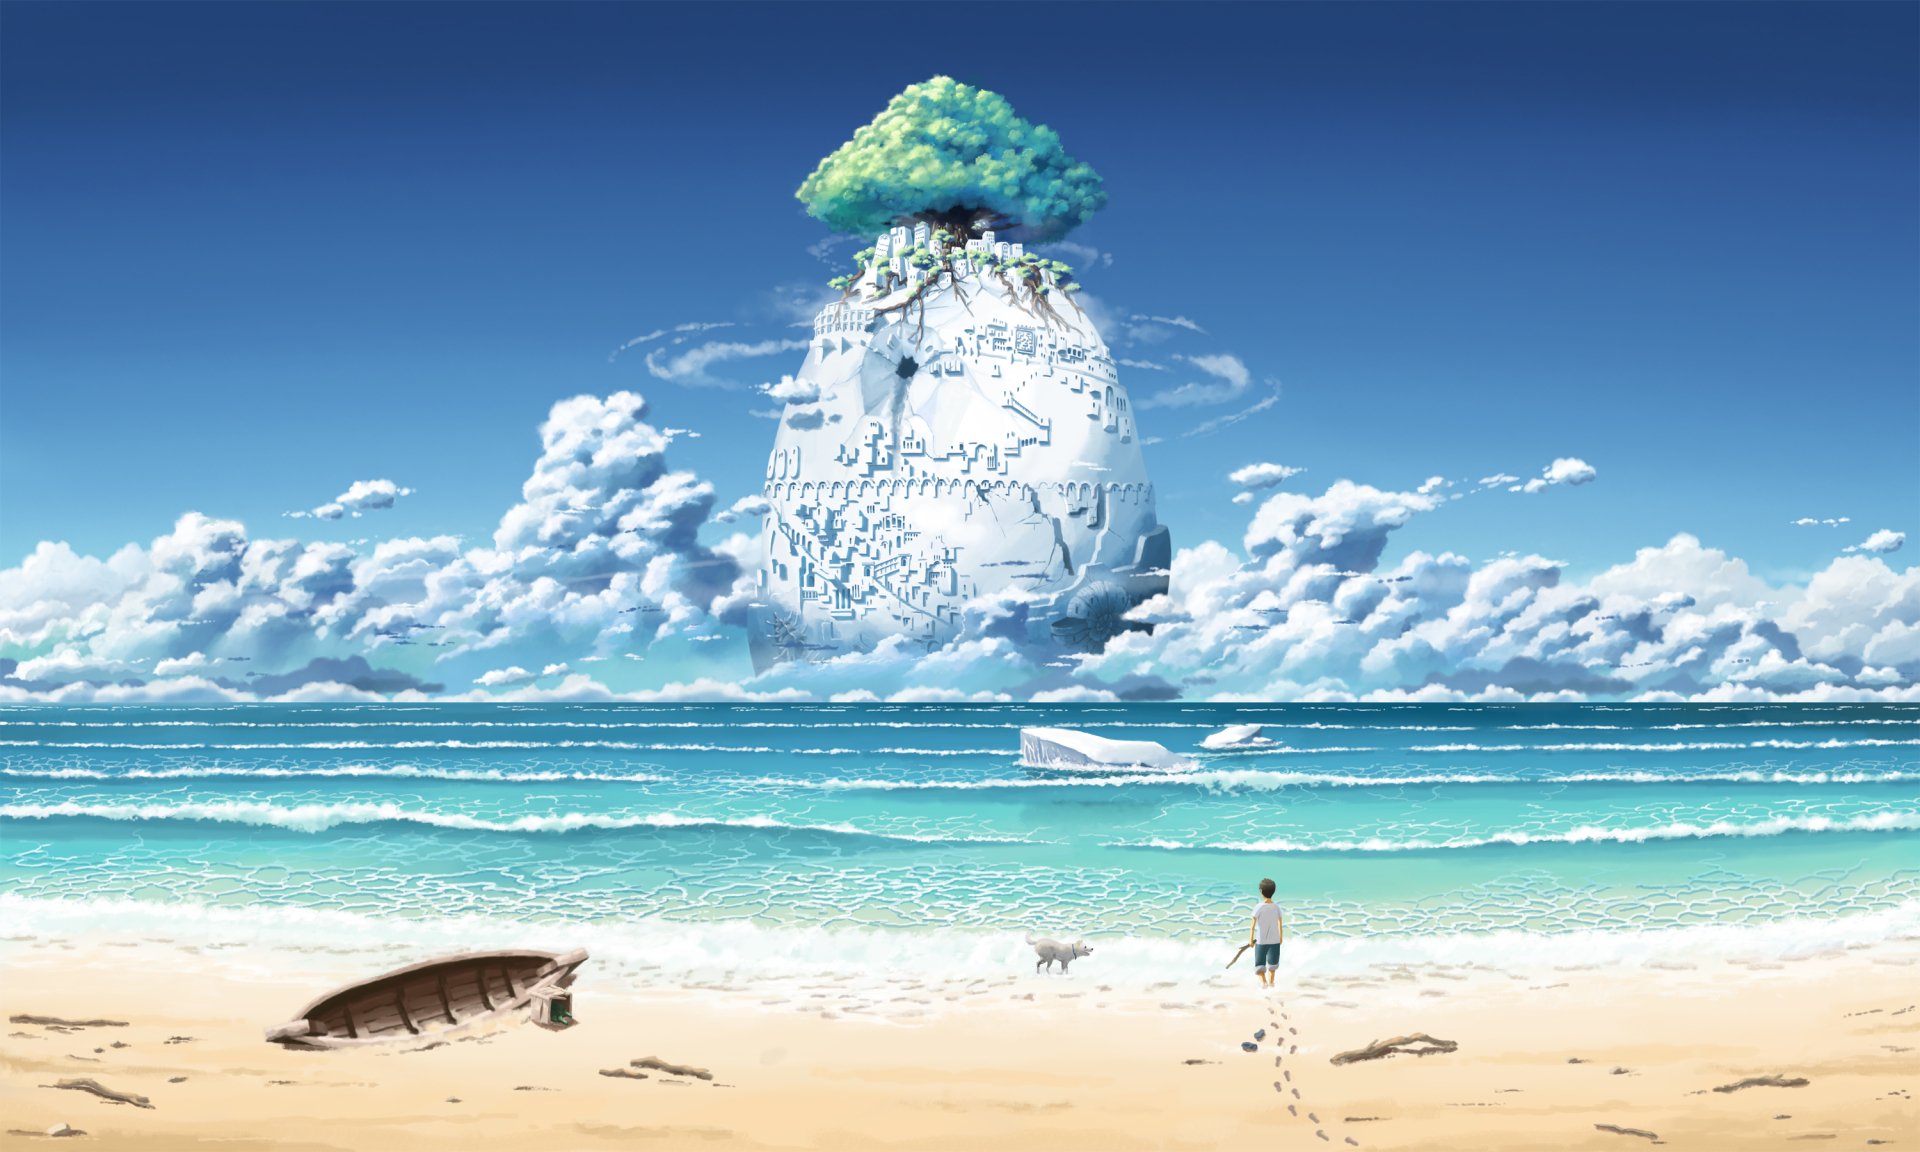 Background anime beach: Hãy ngắm rực rỡ những khung cảnh anime thiên nhiên trên bãi biển tuyệt đẹp. Hình ảnh được thiết kế vô cùng sống động và màu sắc tươi tắn như sức sống của mùa hè. Bản vẽ độc đáo này chắc chắn sẽ tạo cho bạn cảm giác nhẹ nhàng và thư giãn. Hãy tranh thủ thưởng thức bức ảnh này để có một kỳ nghỉ tuyệt vời trên bãi biển!